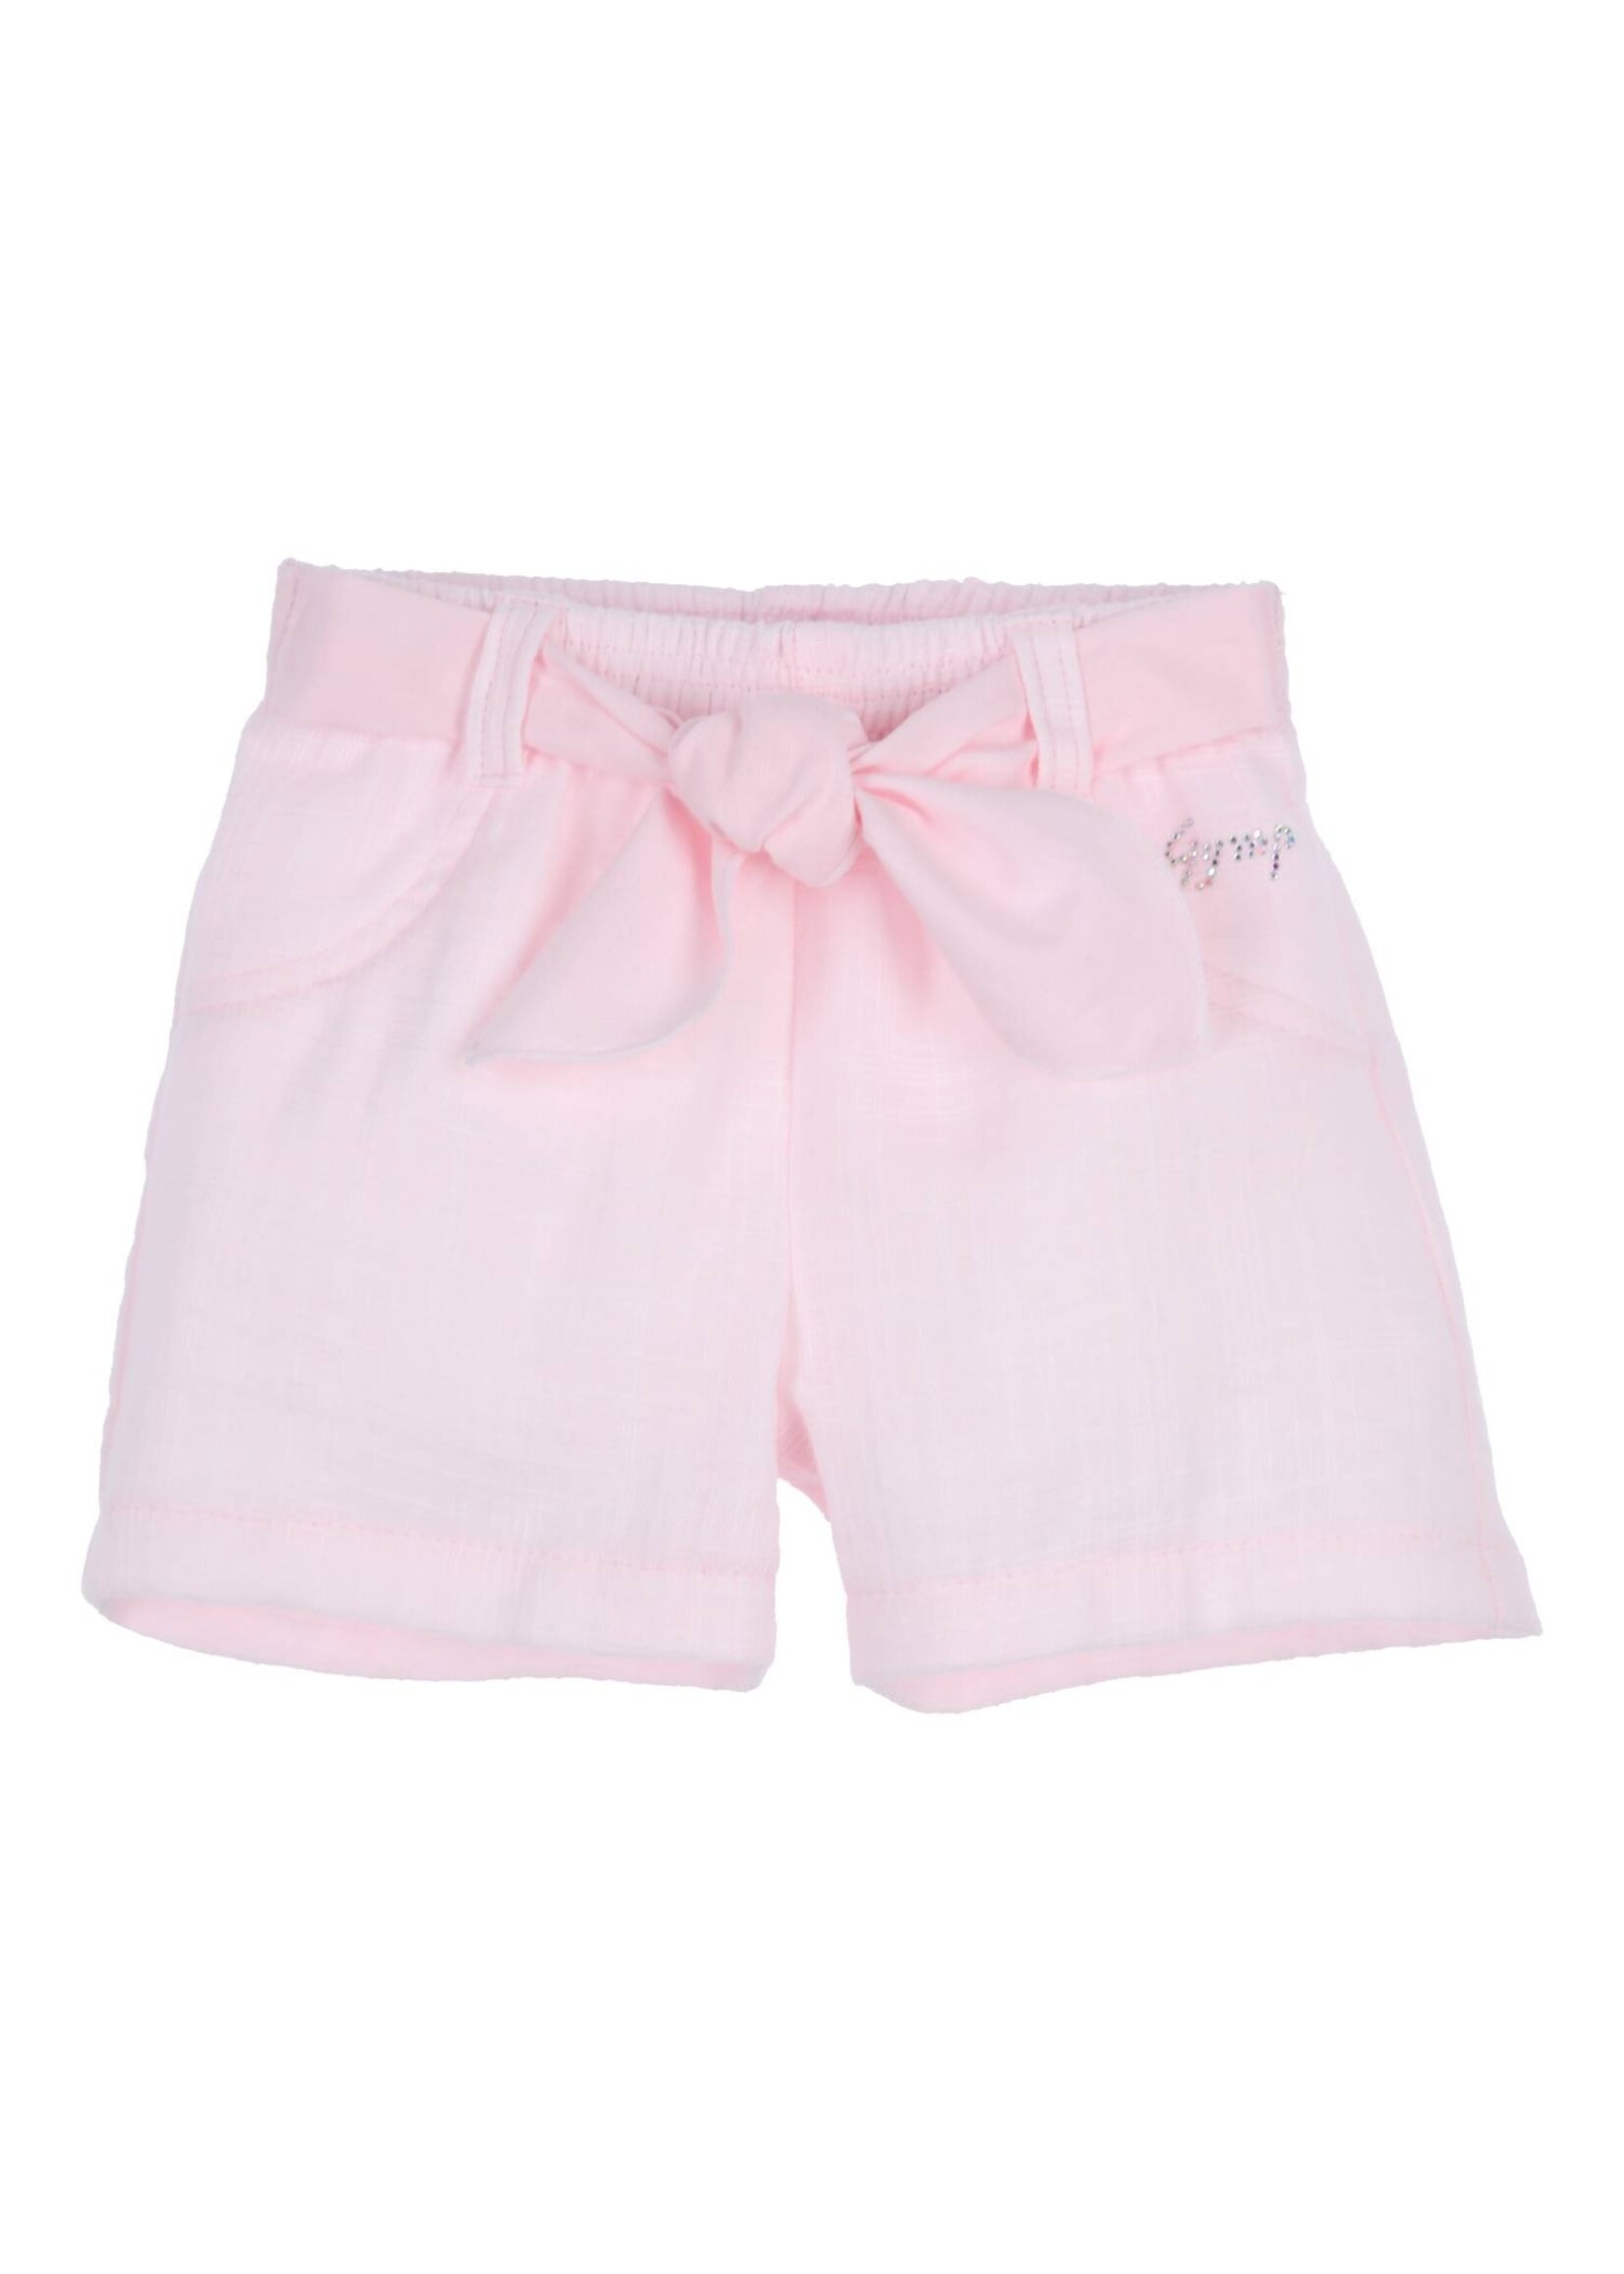 Gymp Girls Shorts Artemis 400-4419-10 Light Pink